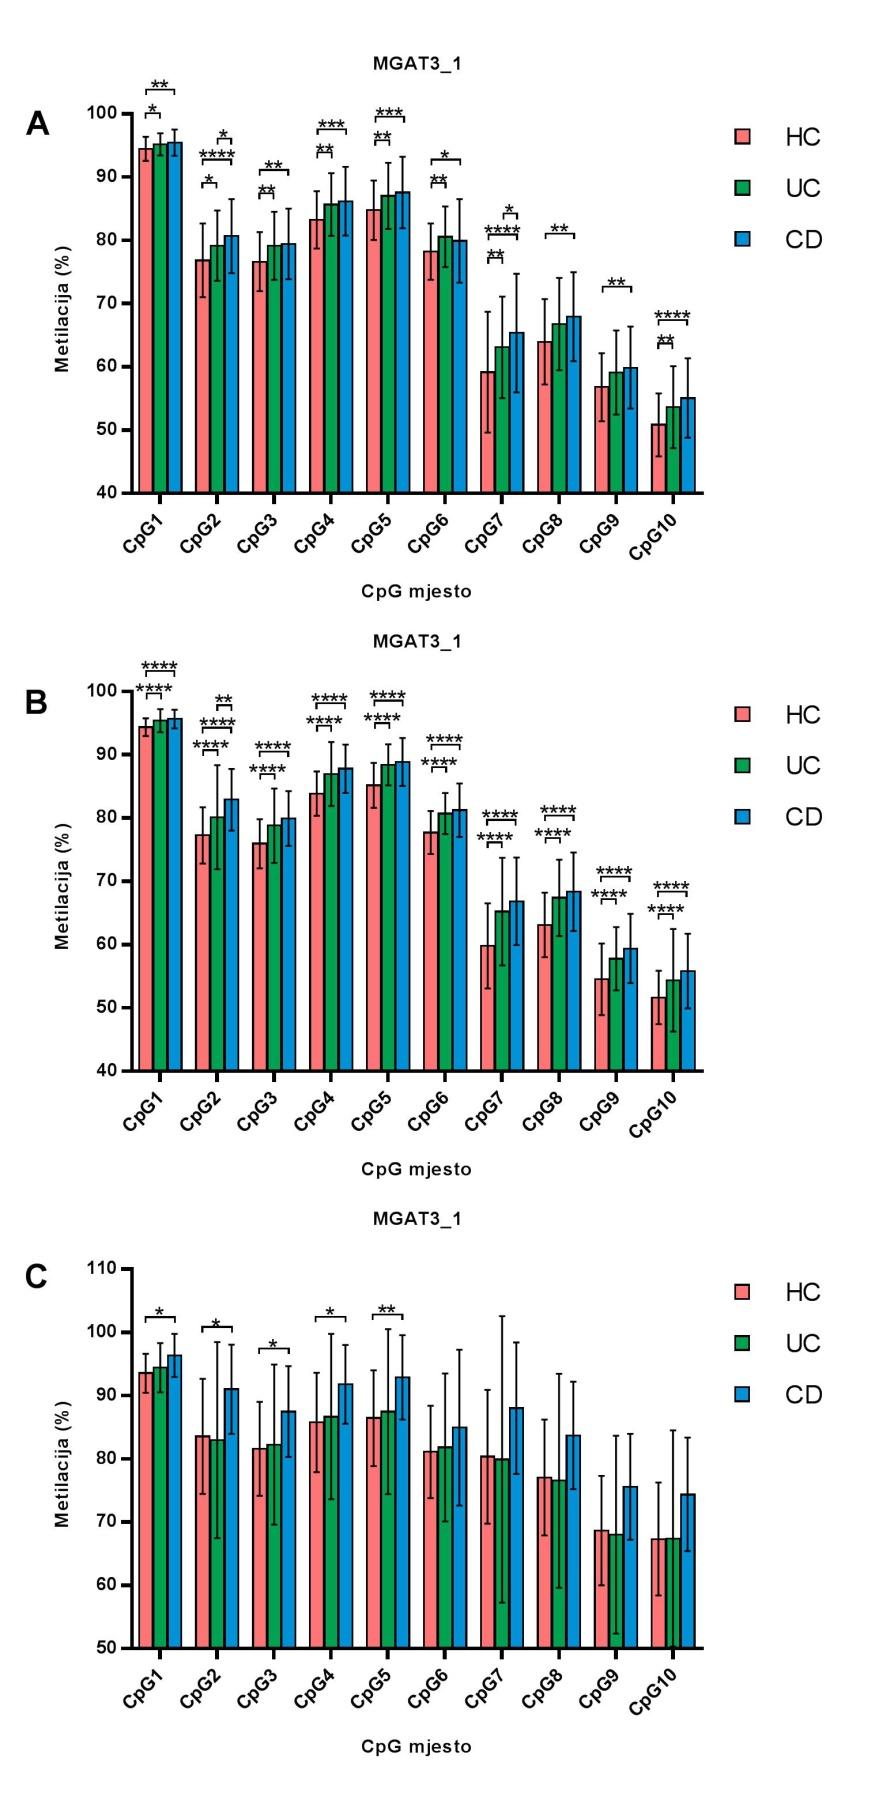 Slika 10. Stupanj CpG metilacije unutar fragmenta 1 gena MGAT3. Prikazan je stupanj metilacije na 10 CpG mjesta.